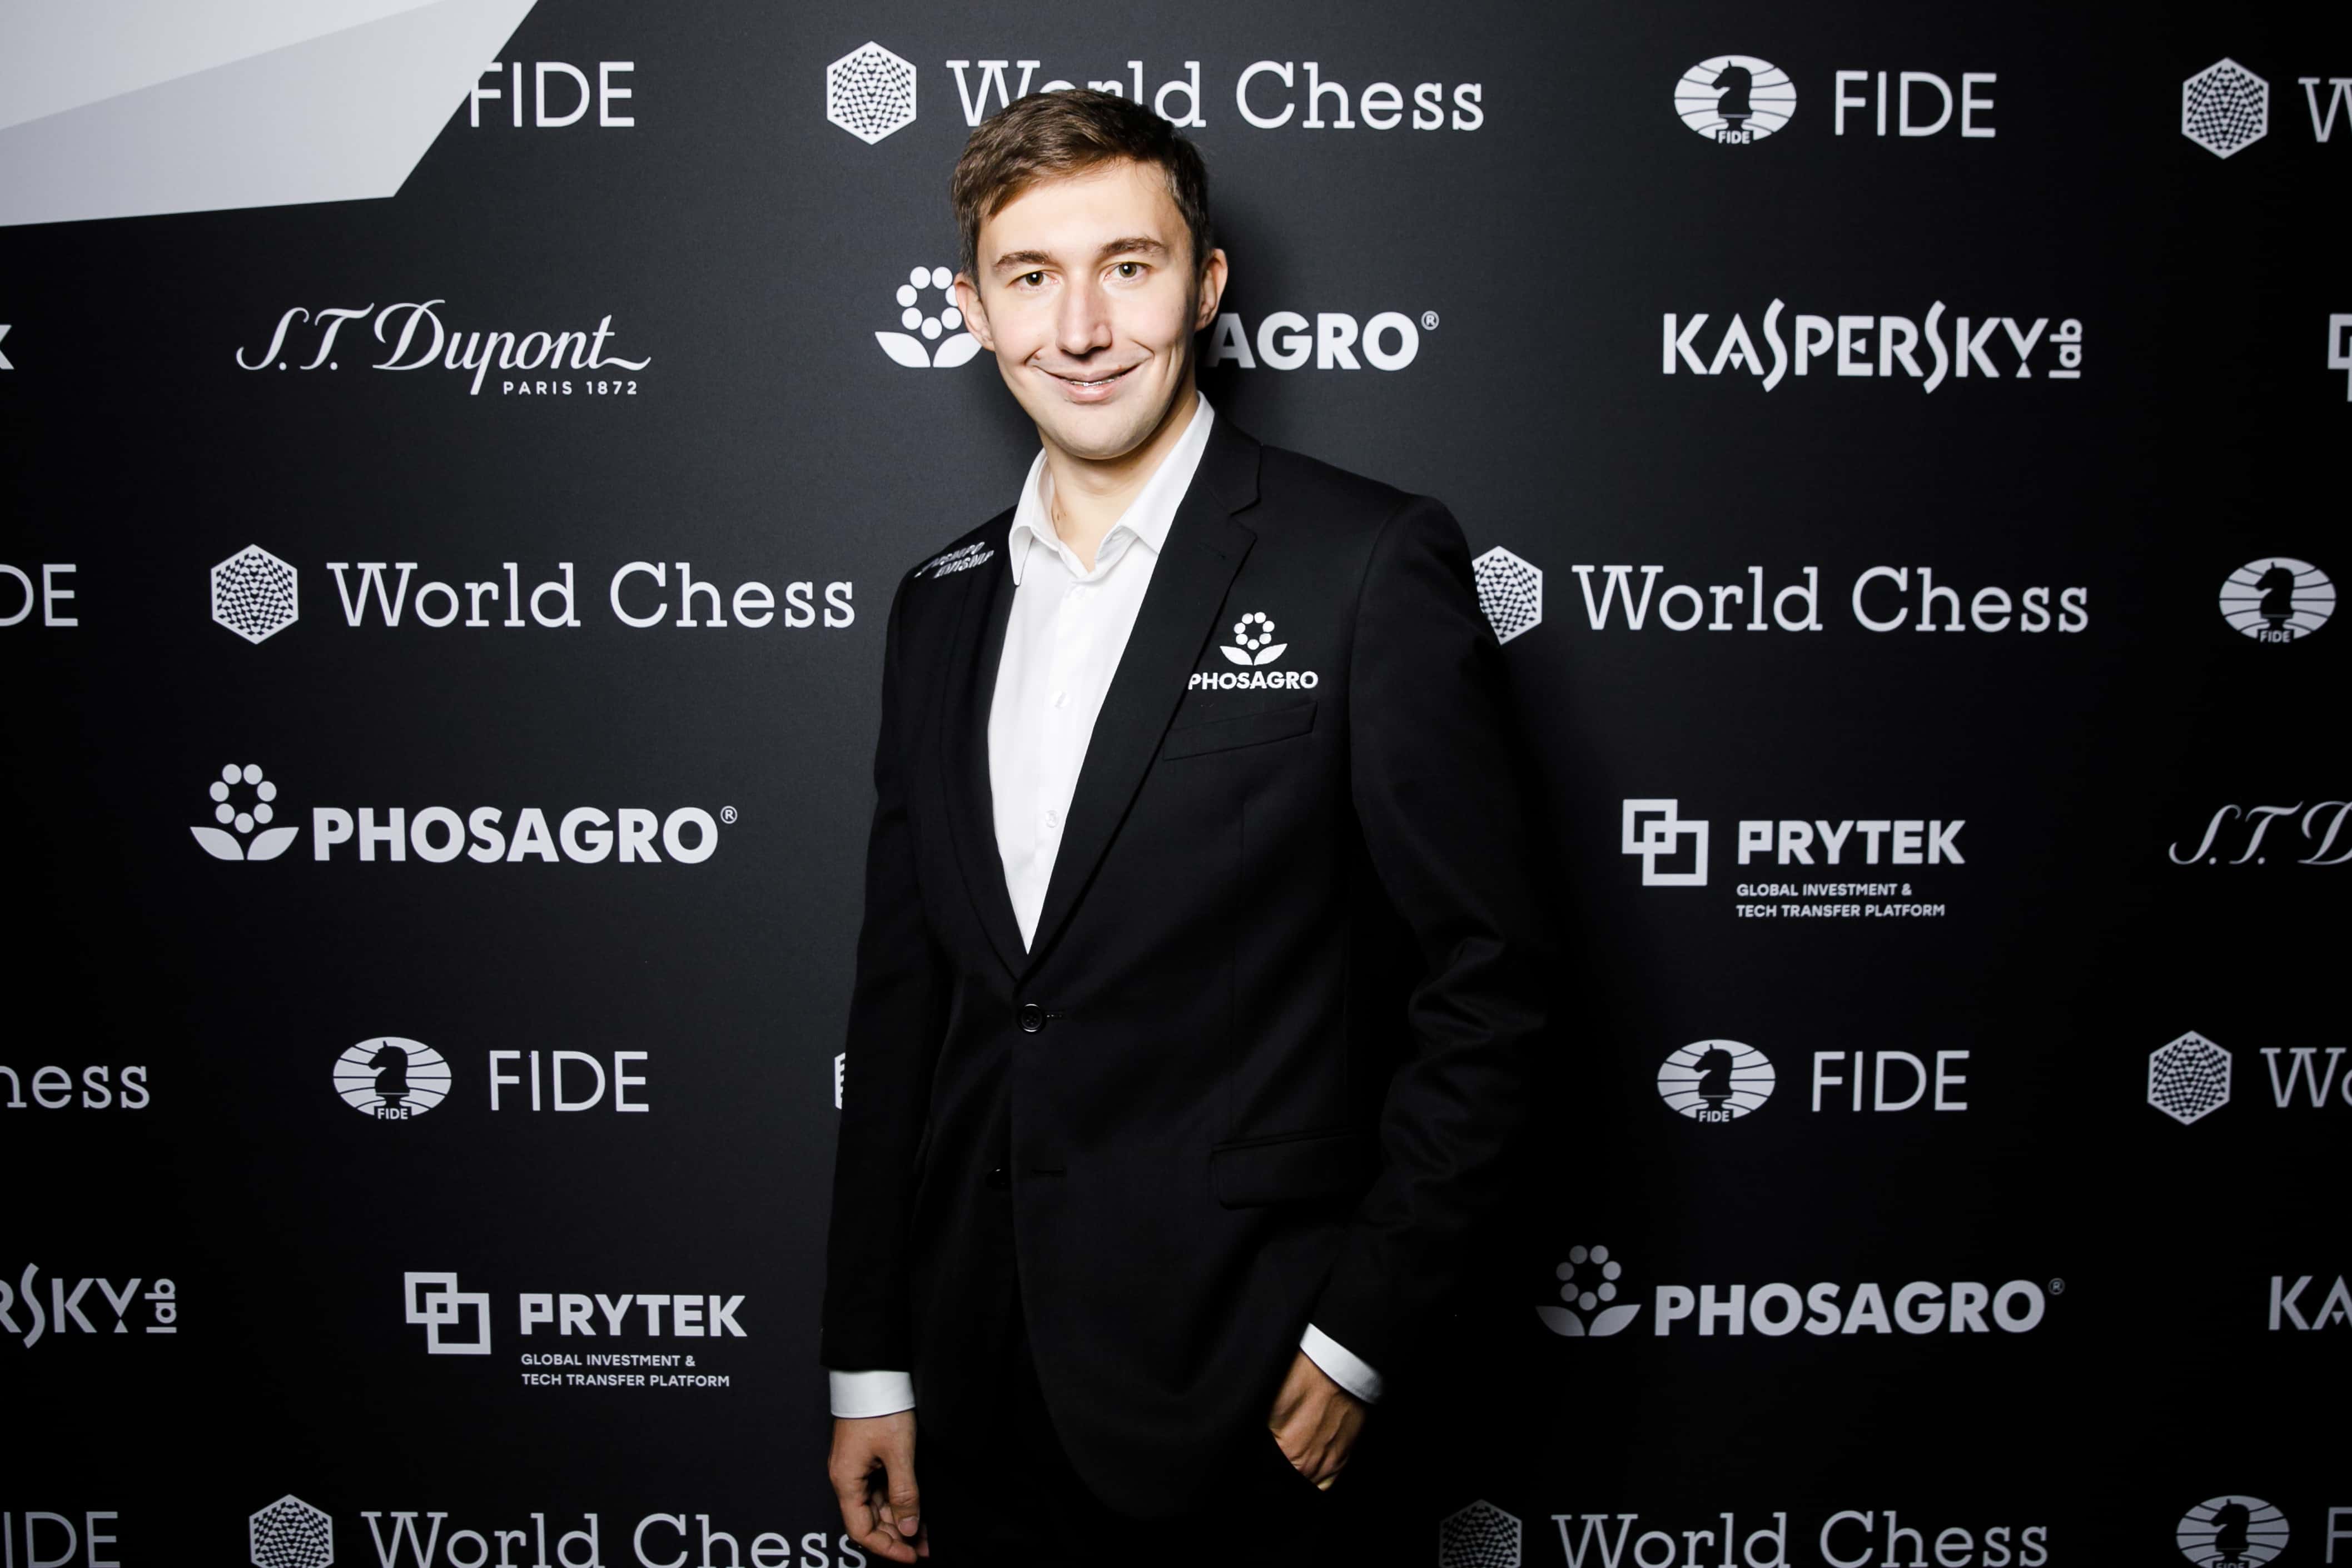 Sergey Karjakin spoke to Chessable